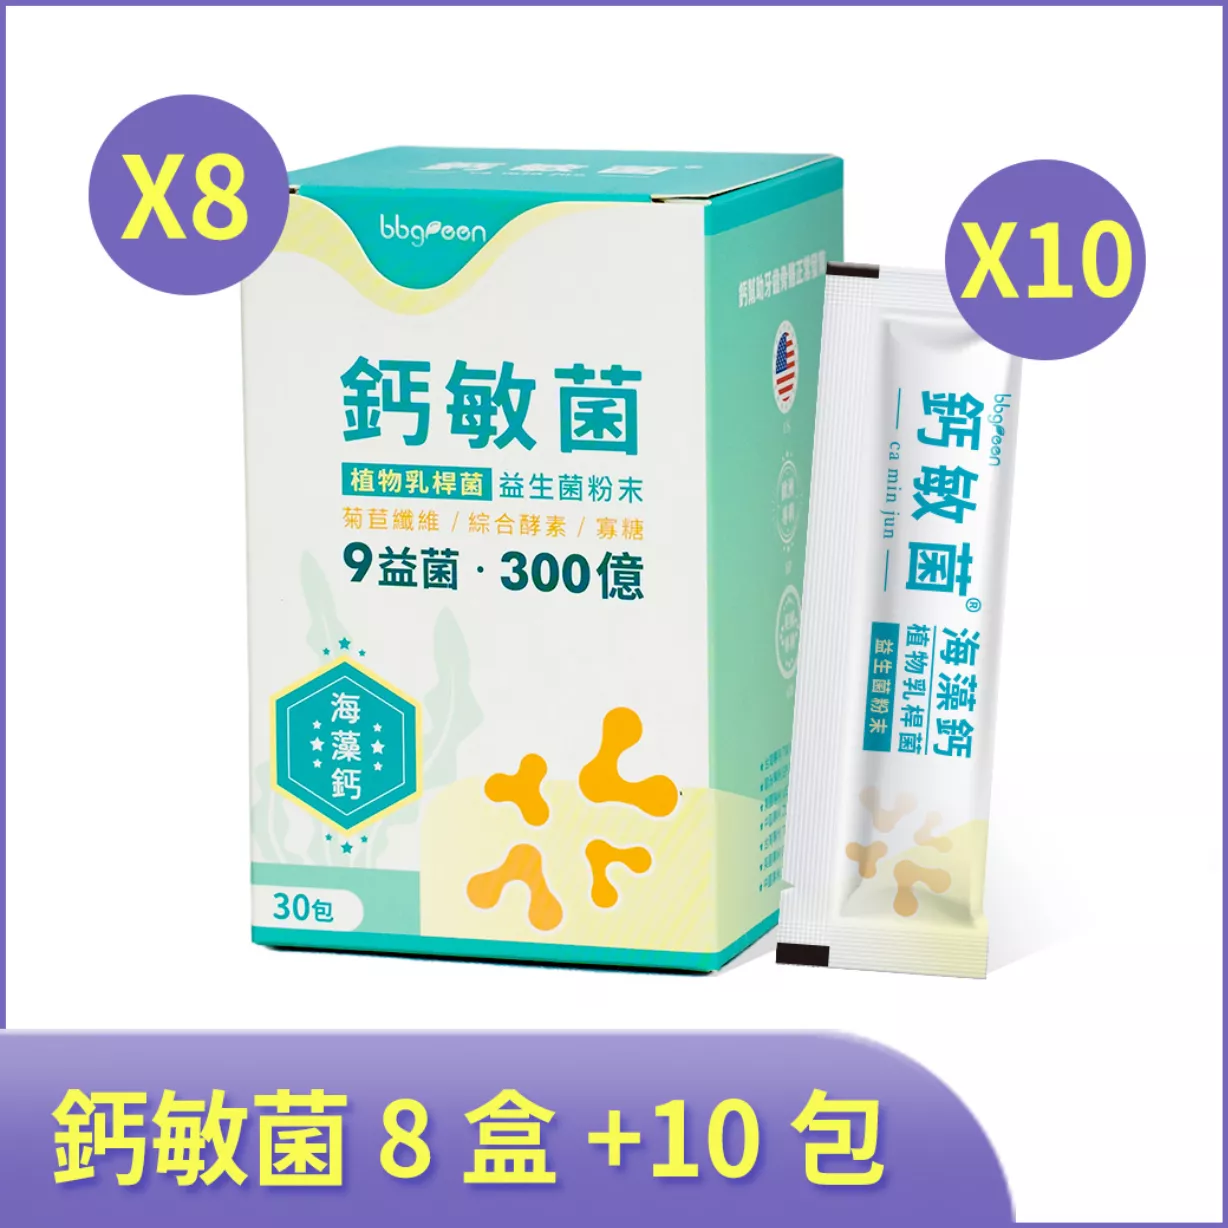 鈣敏菌-益生菌粉末 8盒加量10包